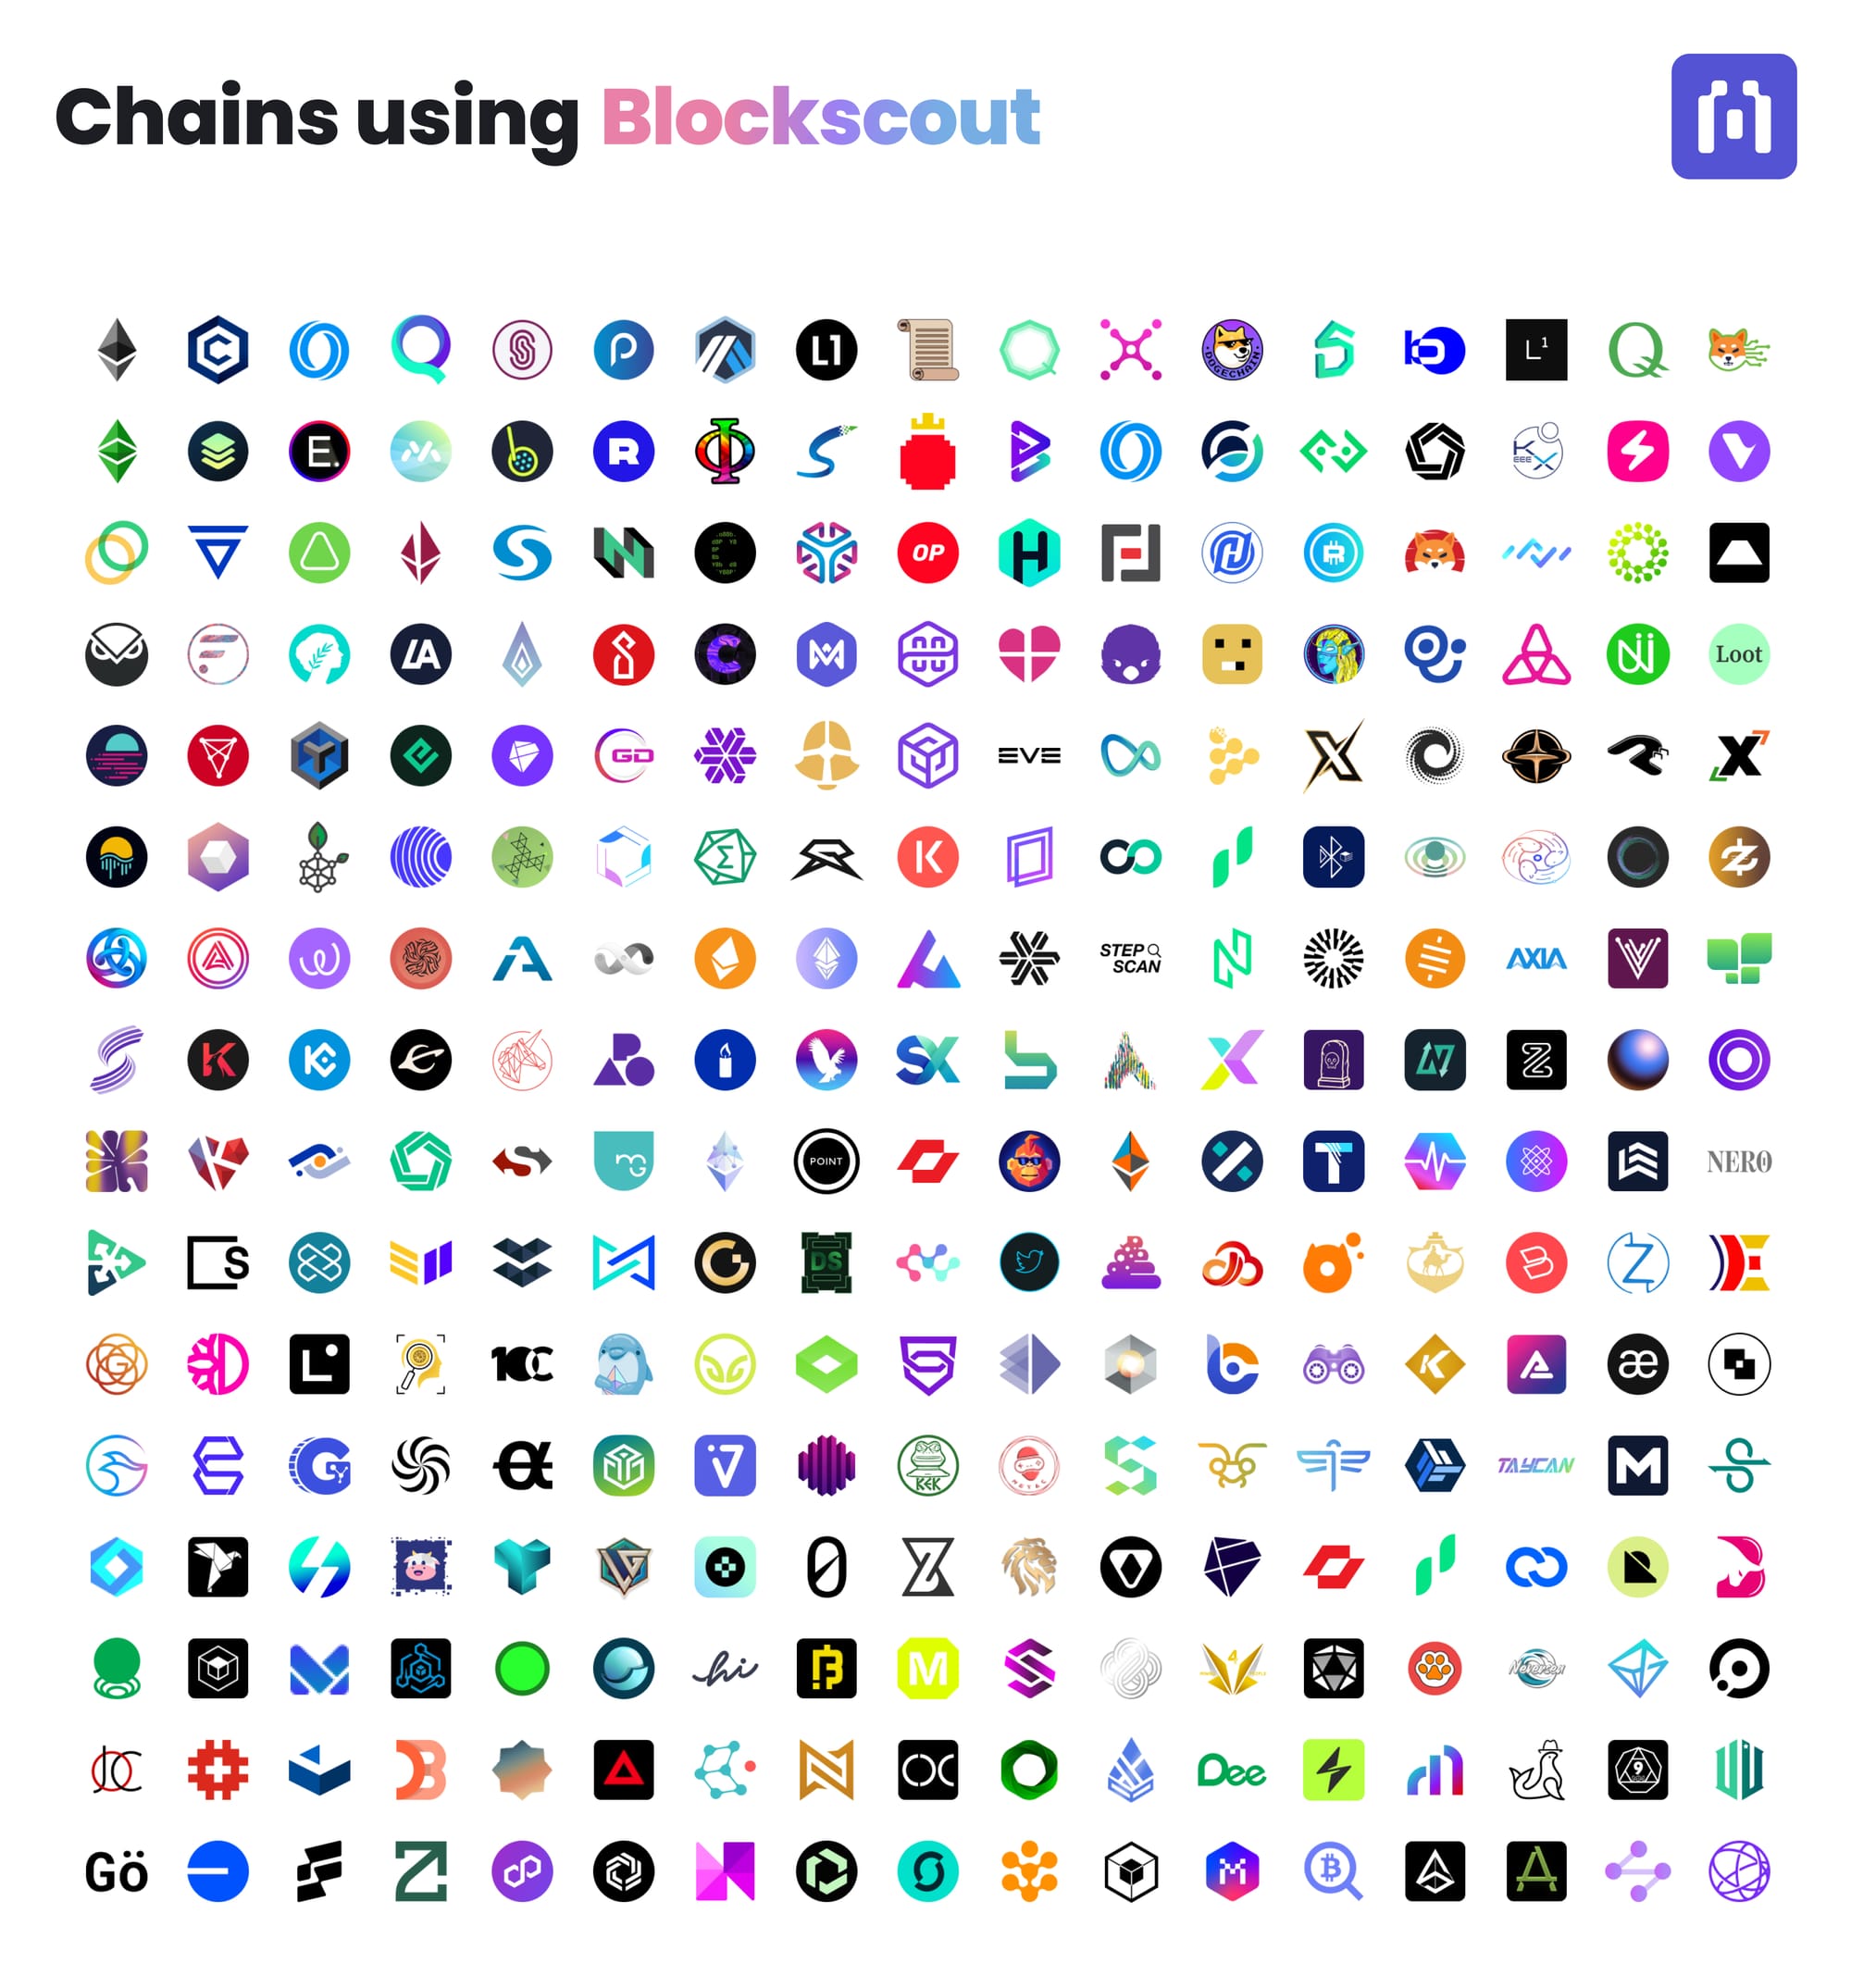 Announcing Blockscout 6.0